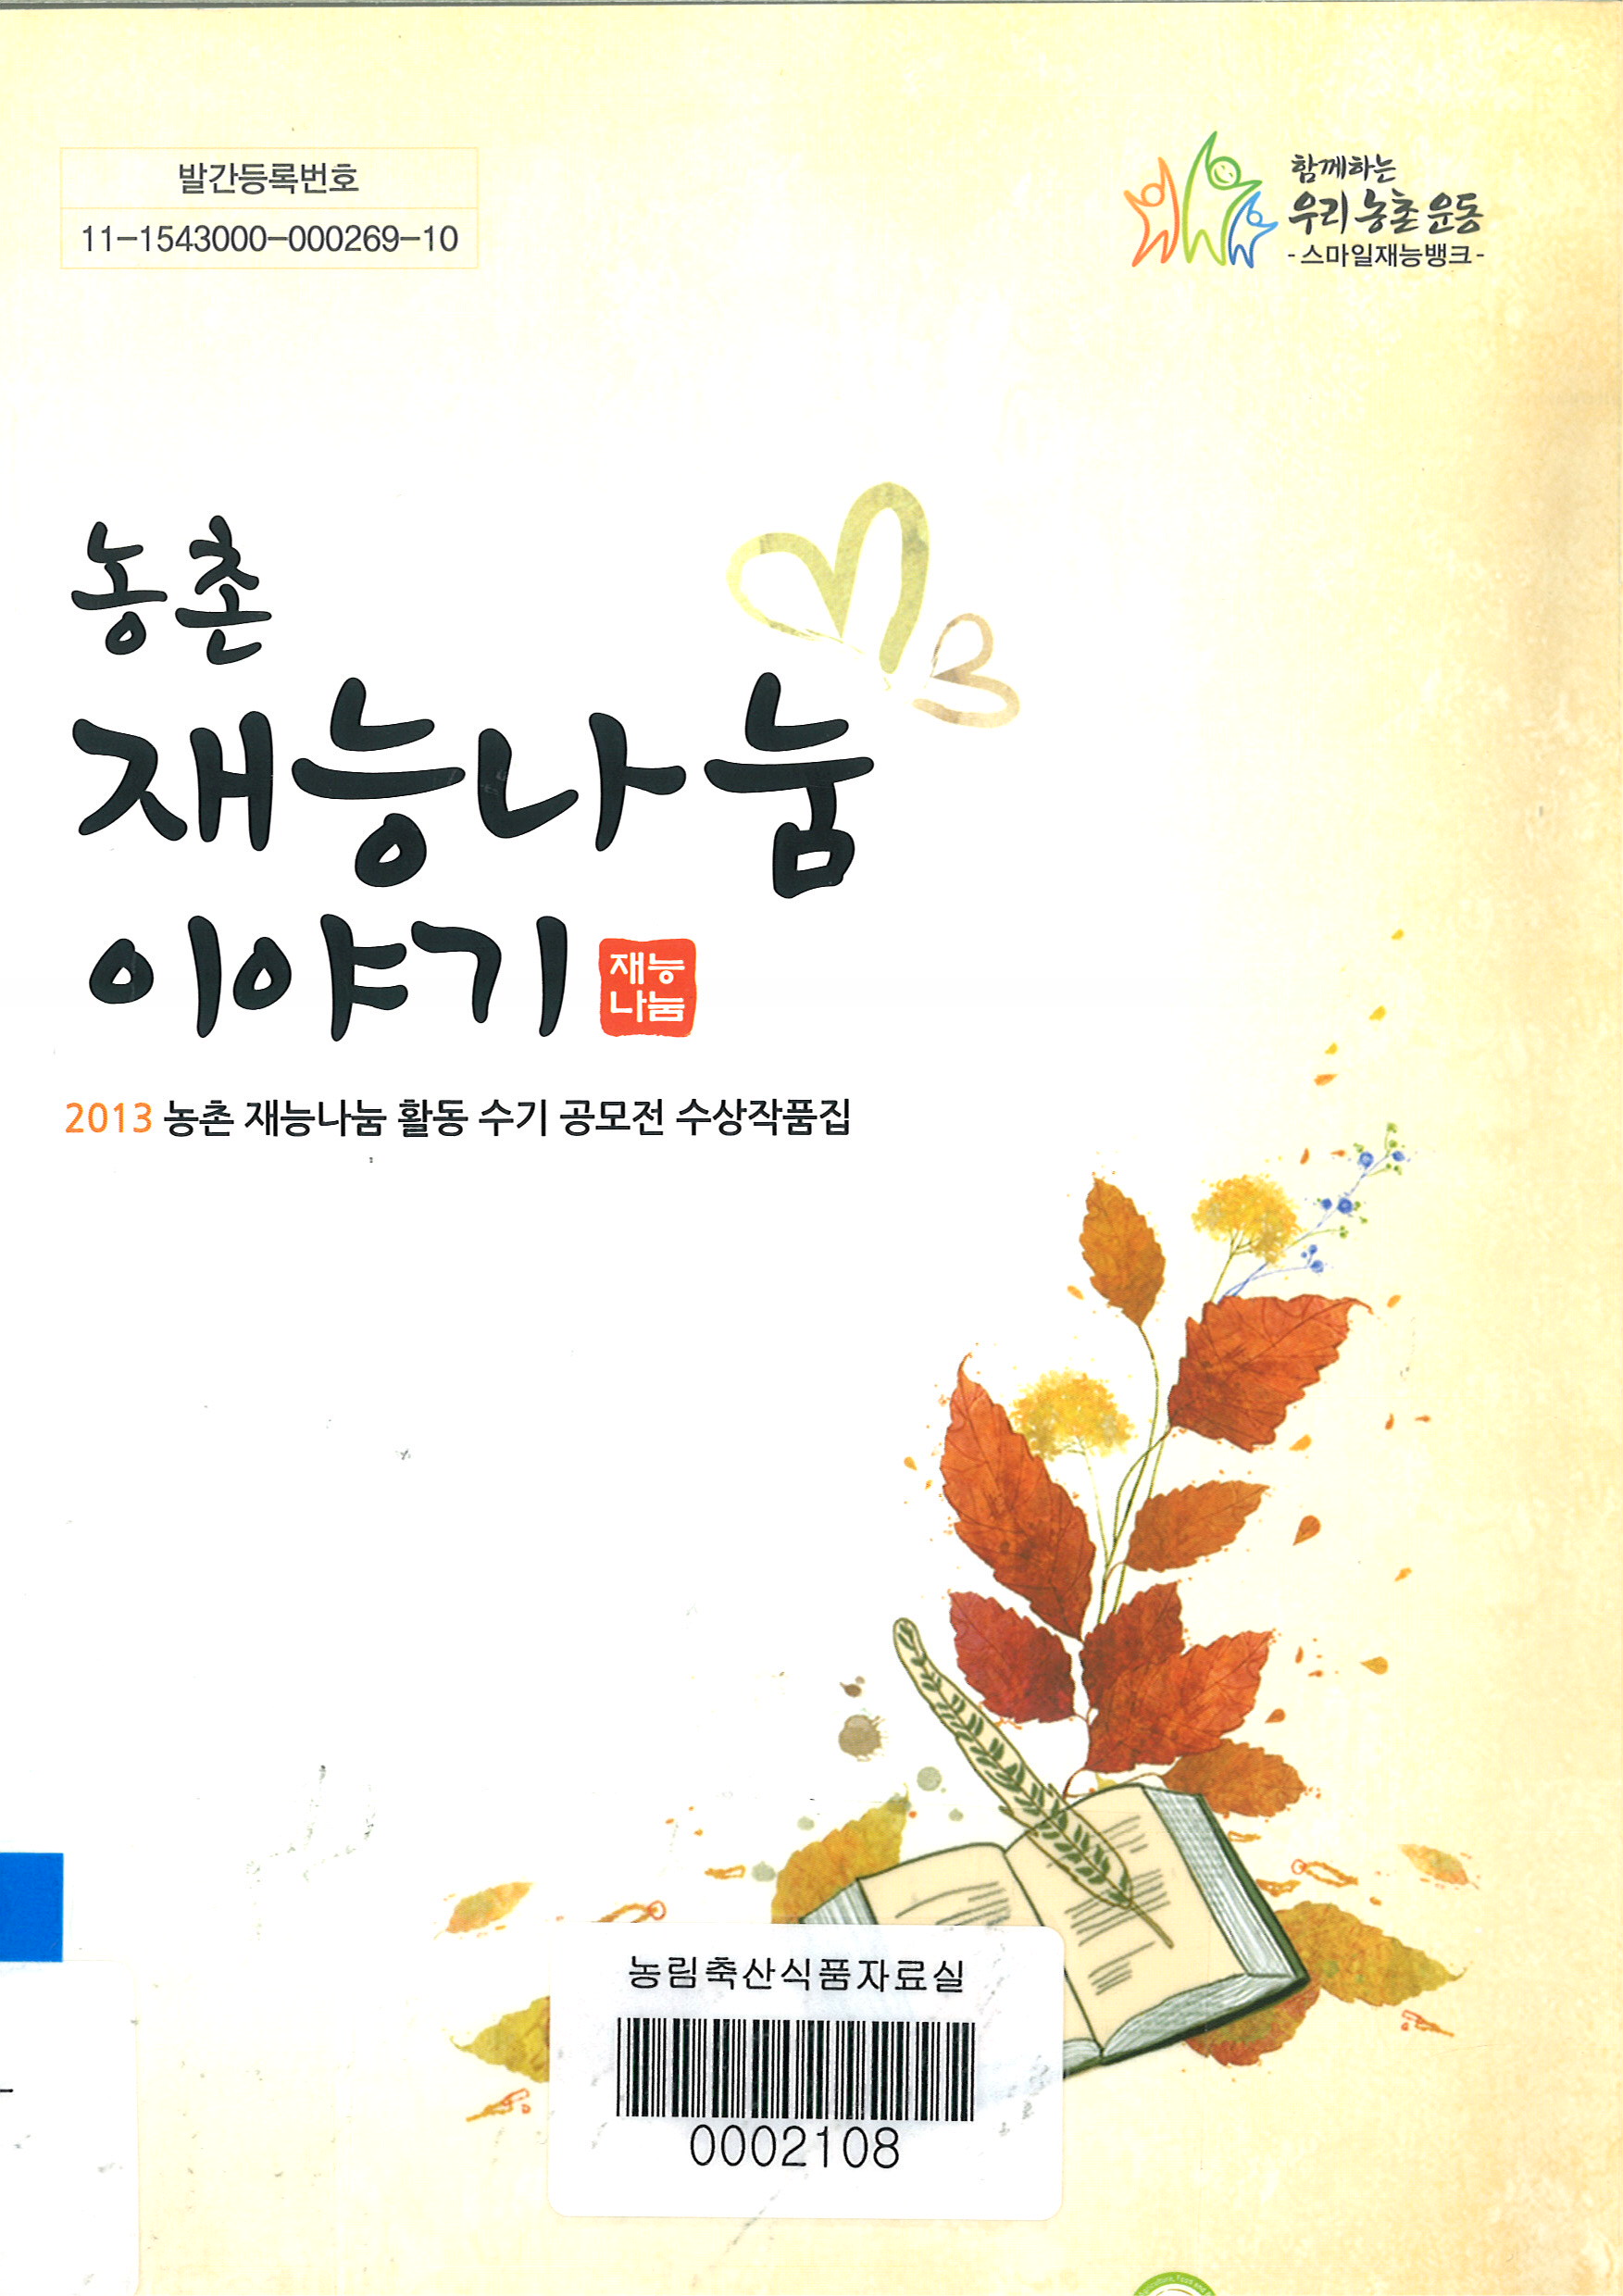 농촌 재능나눔 이야기 : 2013 농촌 재능나눔 활동 수기 공모전 수상작품집 / 농림축산식품부 농...